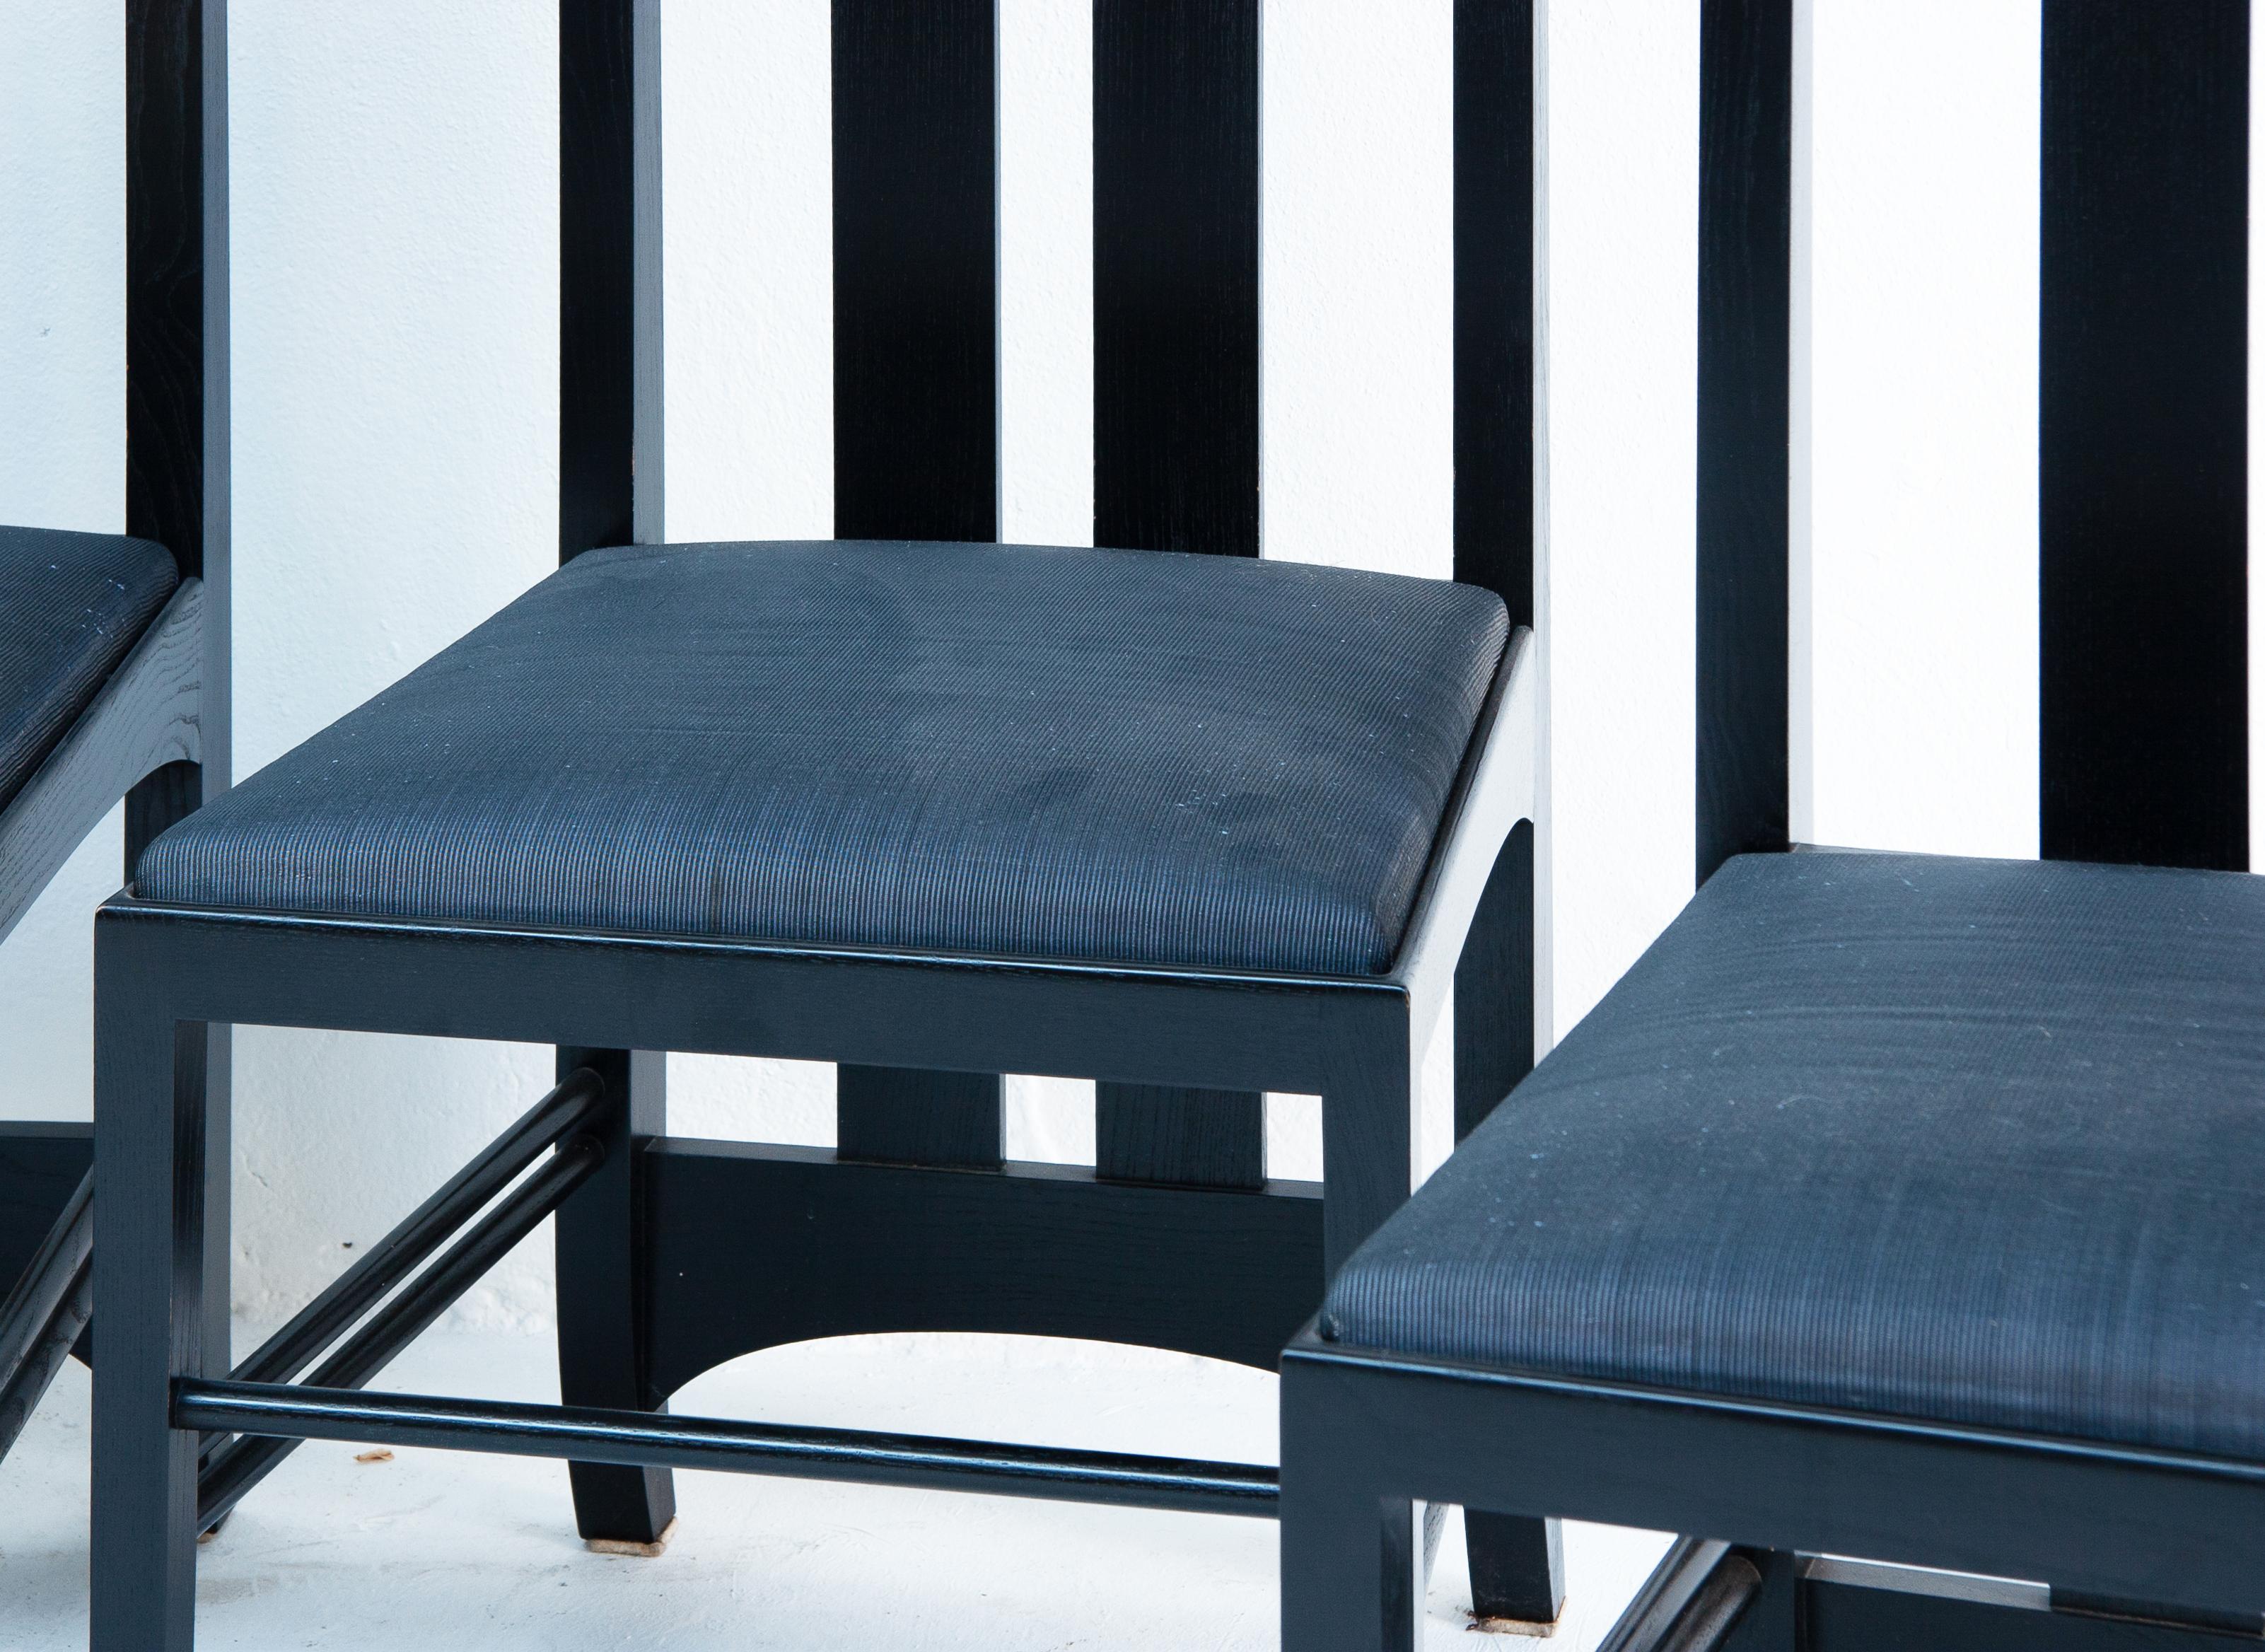 Die Ingram Mackintosh Stühle für Cassina sind eine Kollektion von Stühlen mit hoher Rückenlehne, die von Charles Rennie Mackintosh entworfen wurden. Diese Stühle wurden erst posthum, um 1970, hergestellt. Die renommierte Möbelfirma Cassina fertigte